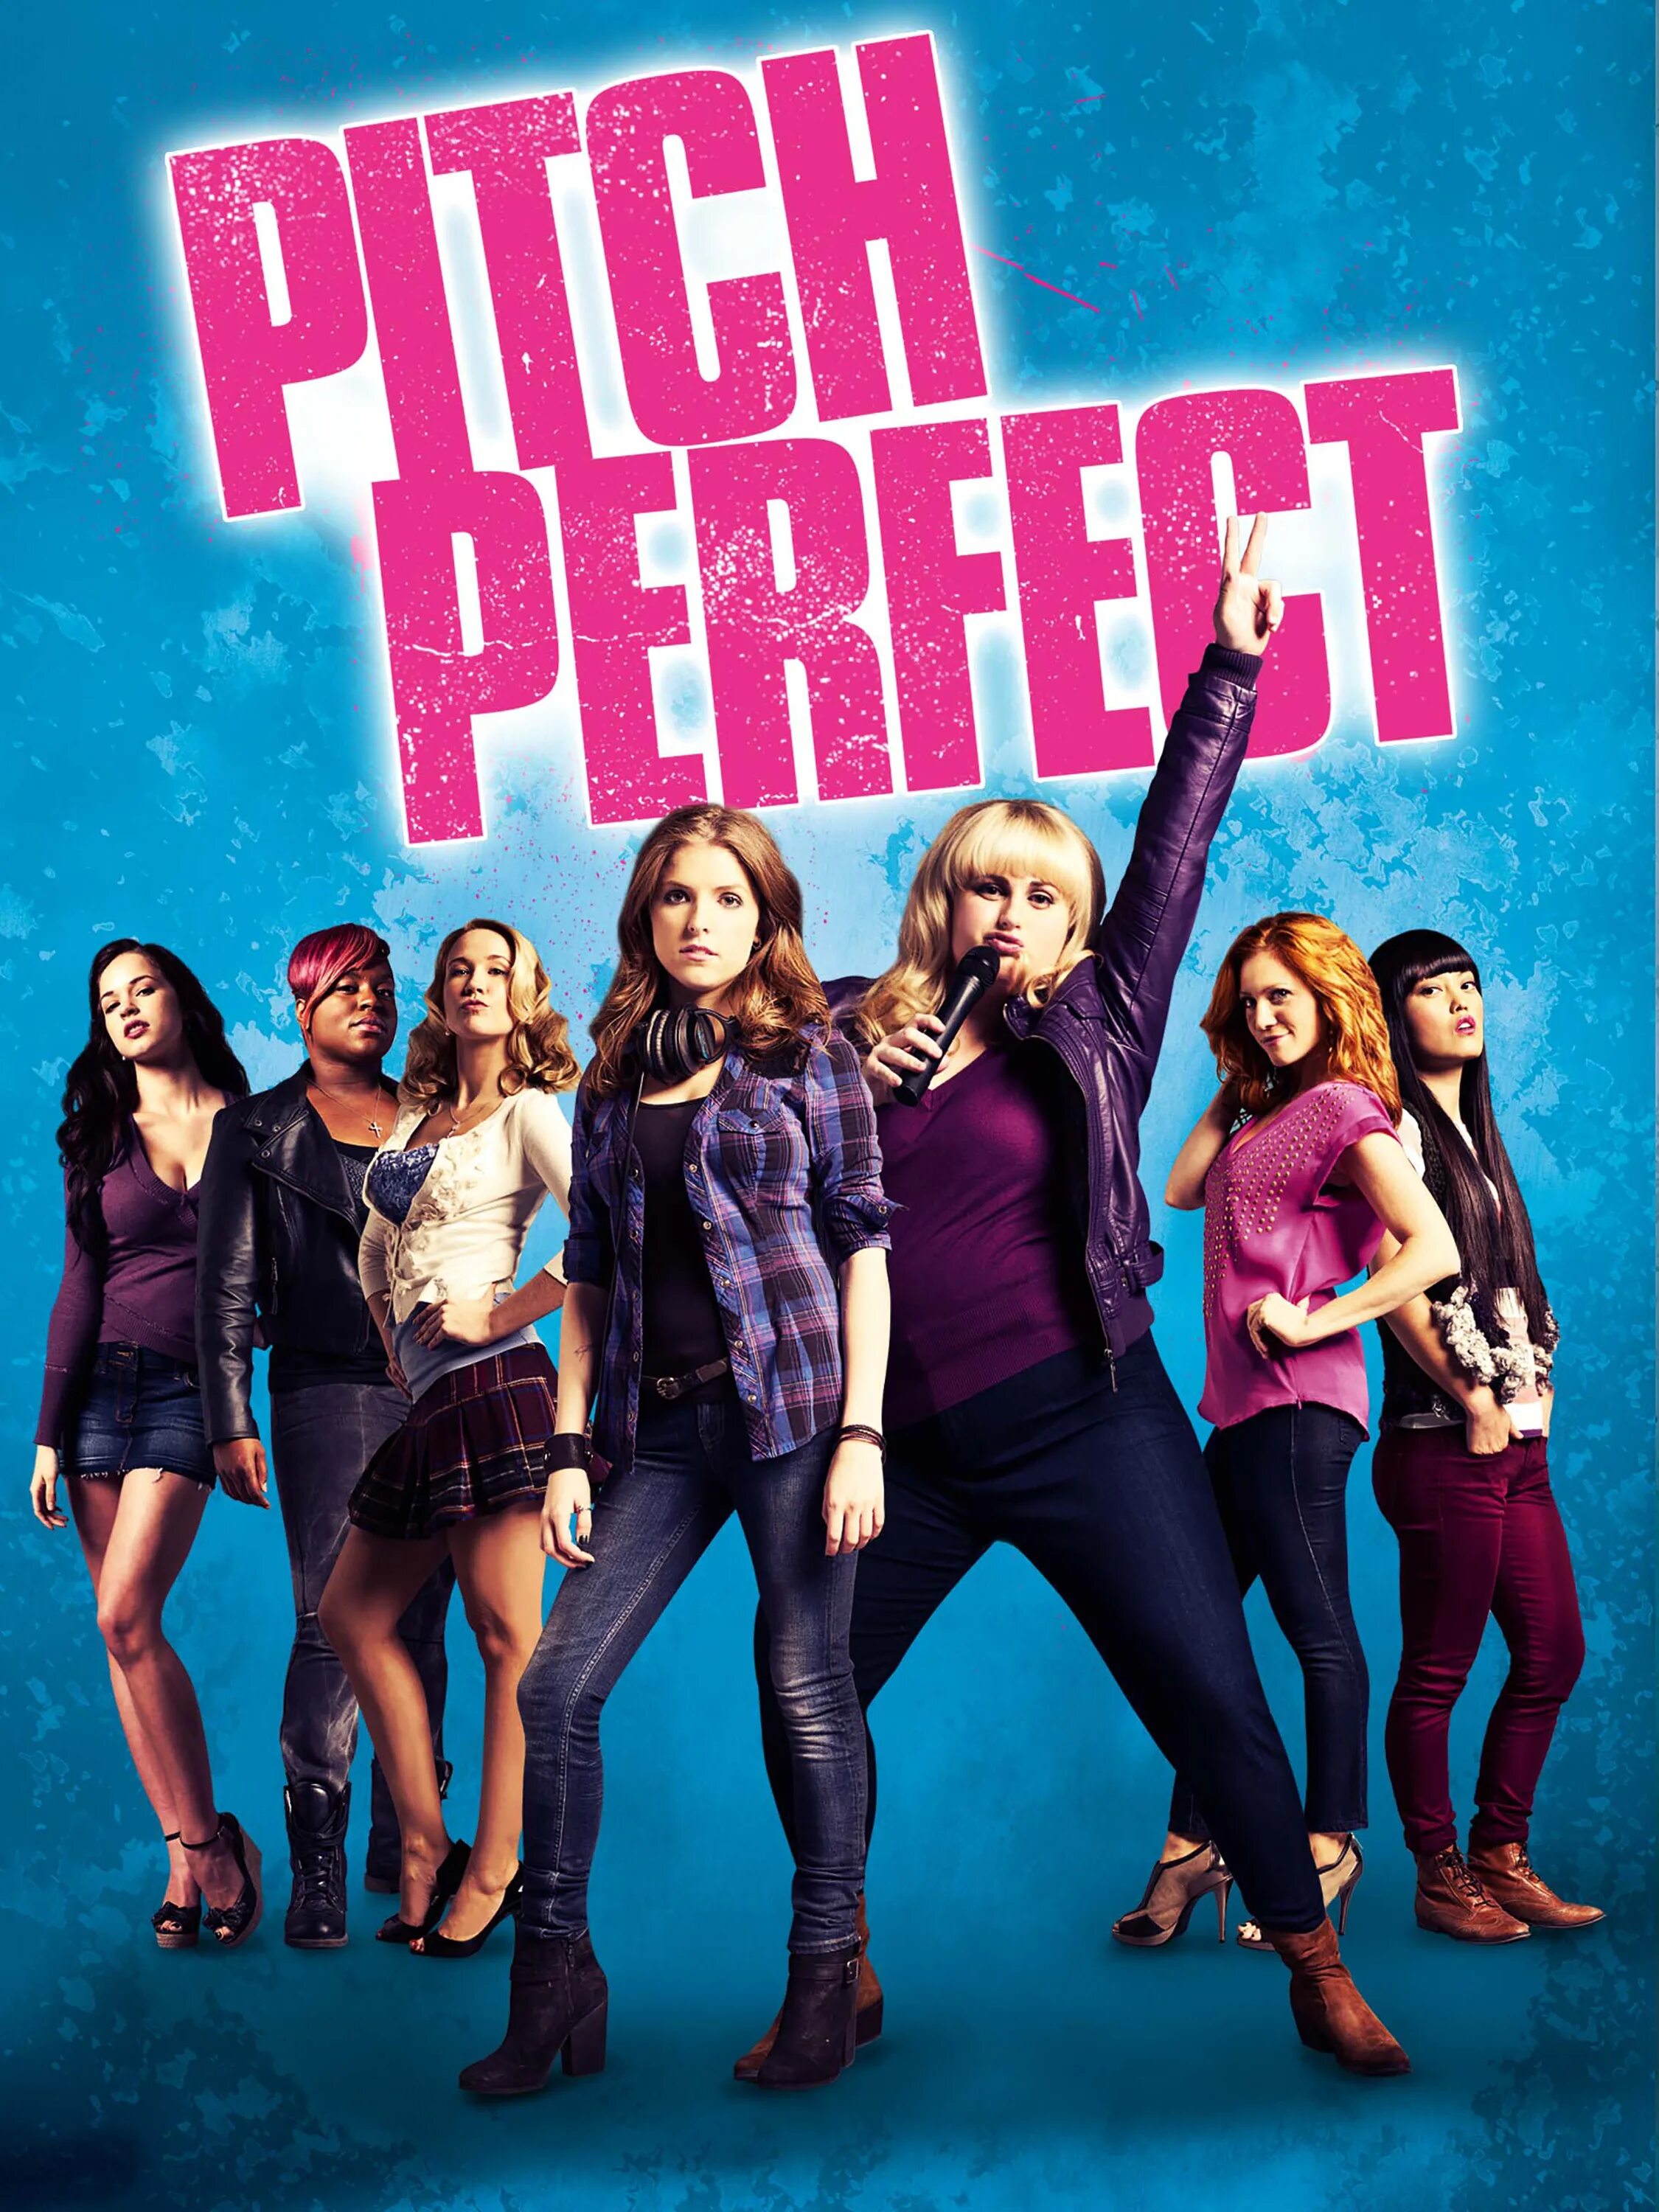 Pitch perfect (2012). Ben Platt Pitch perfect. Саундтреки идеальный